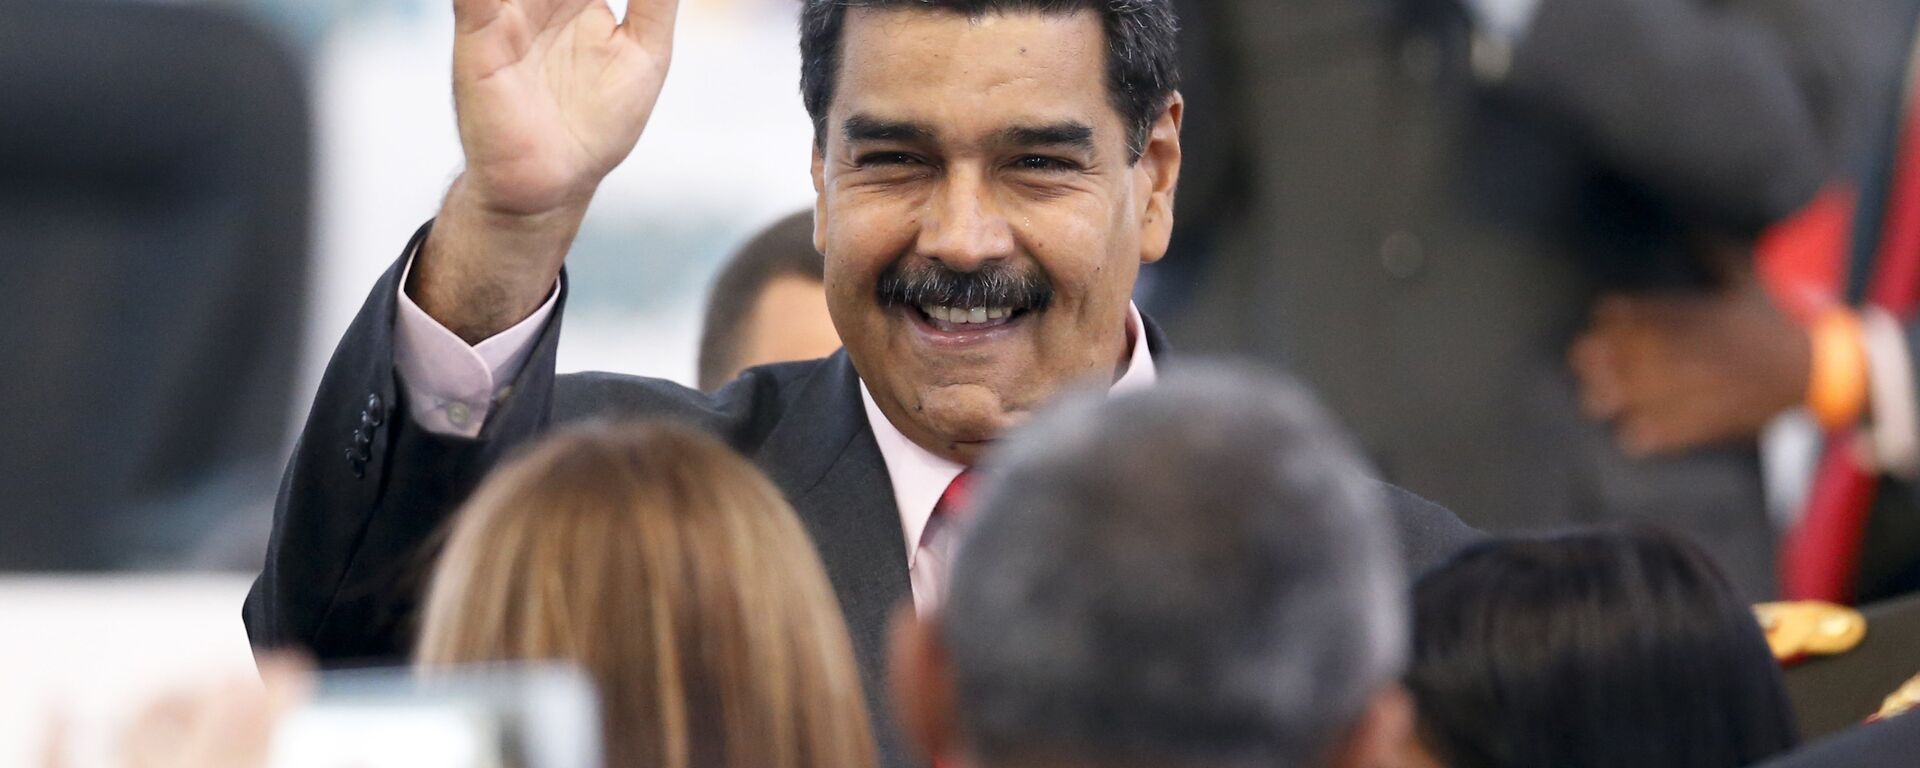 Nicolás Maduro, presidente de Venezuela - Sputnik Mundo, 1920, 30.03.2021